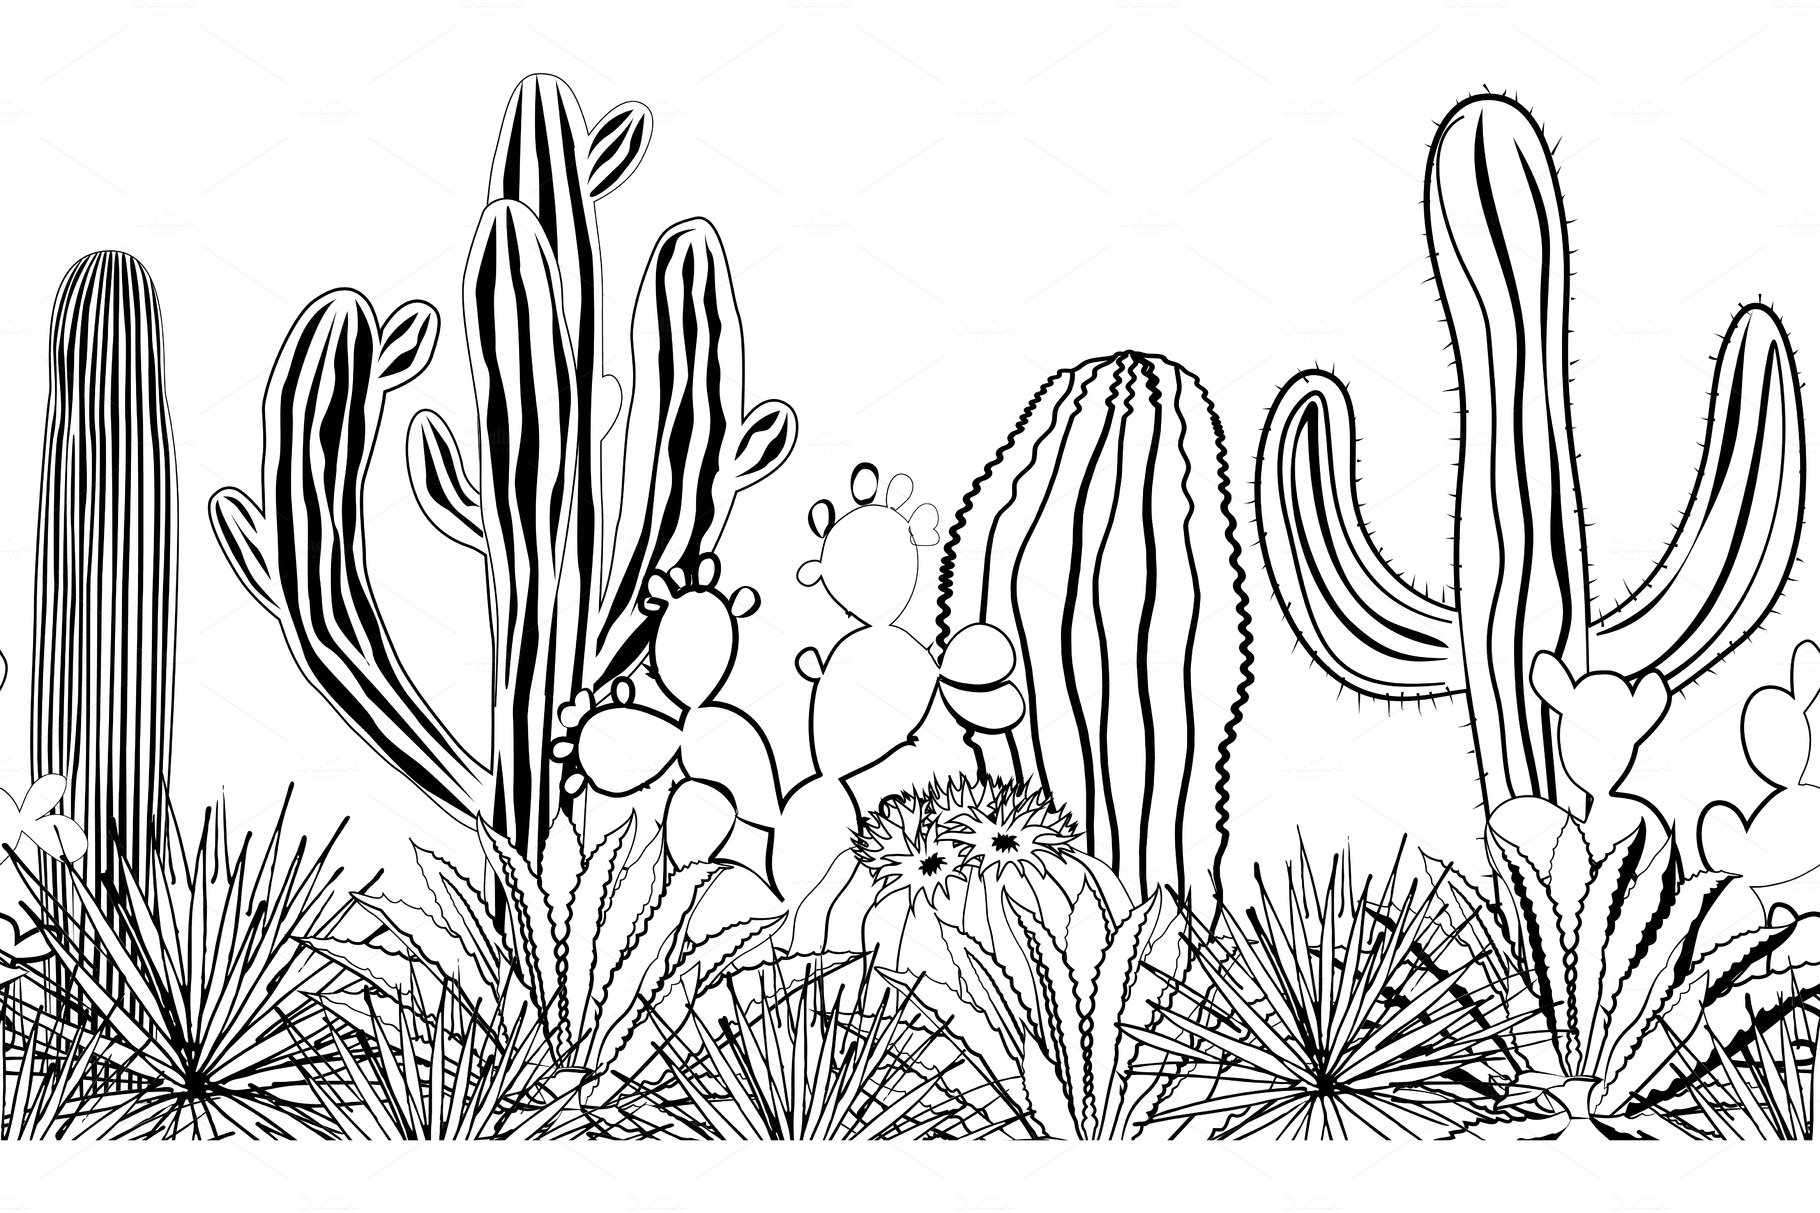 Cactus plant invertebrate outdoors. AI | Premium Photo - rawpixel